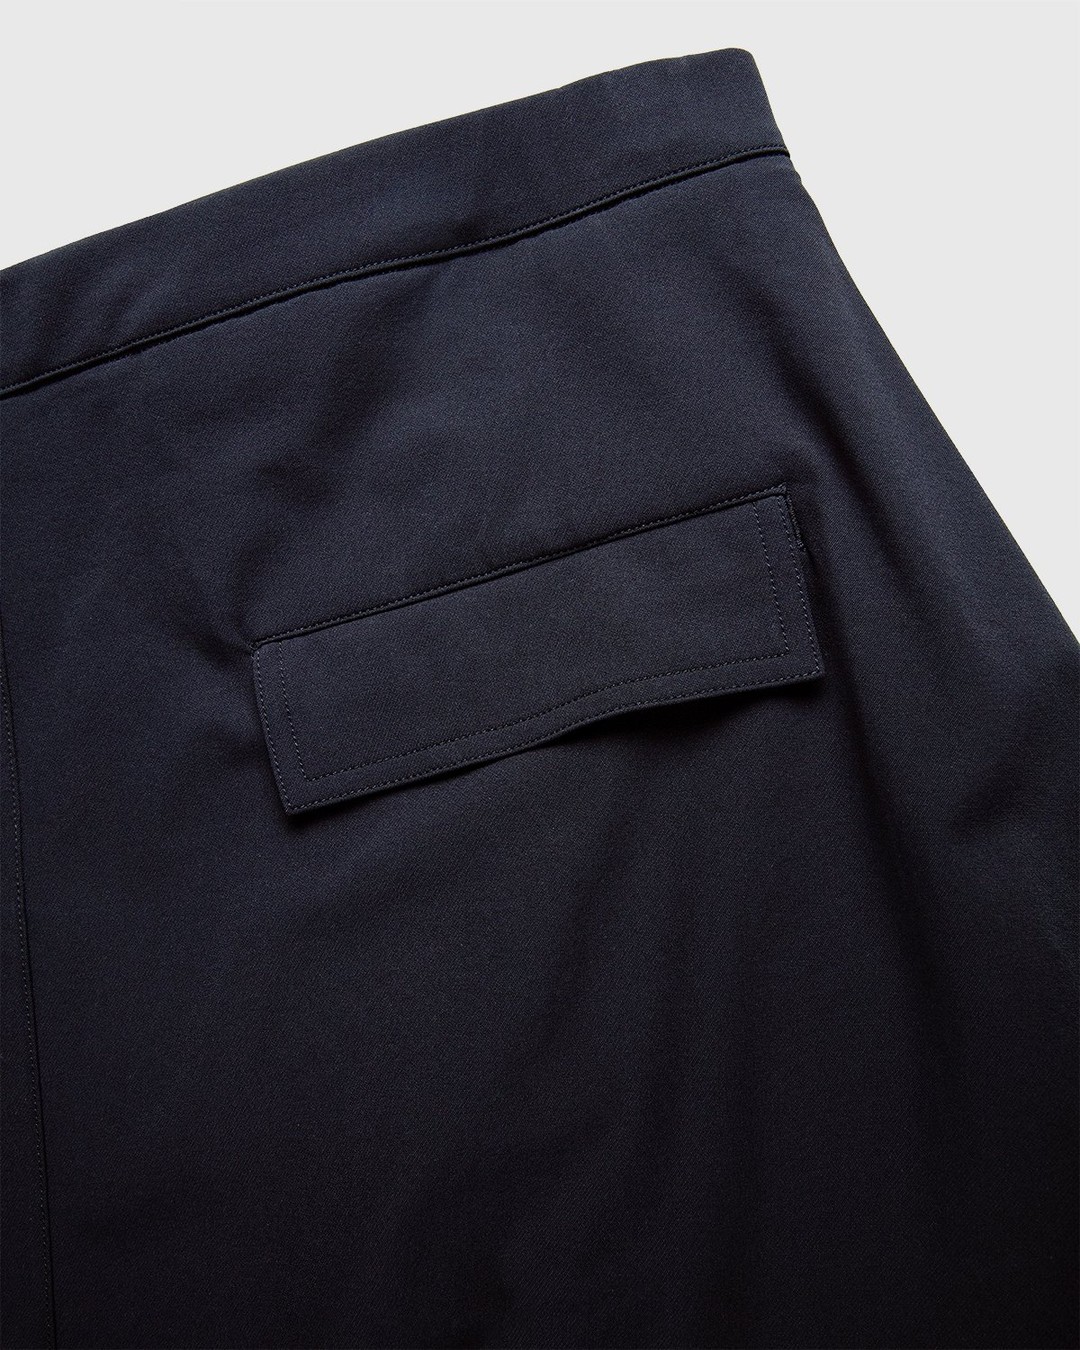 ACRONYM – SP28-DS Pants Black - Active Pants - Black - Image 7